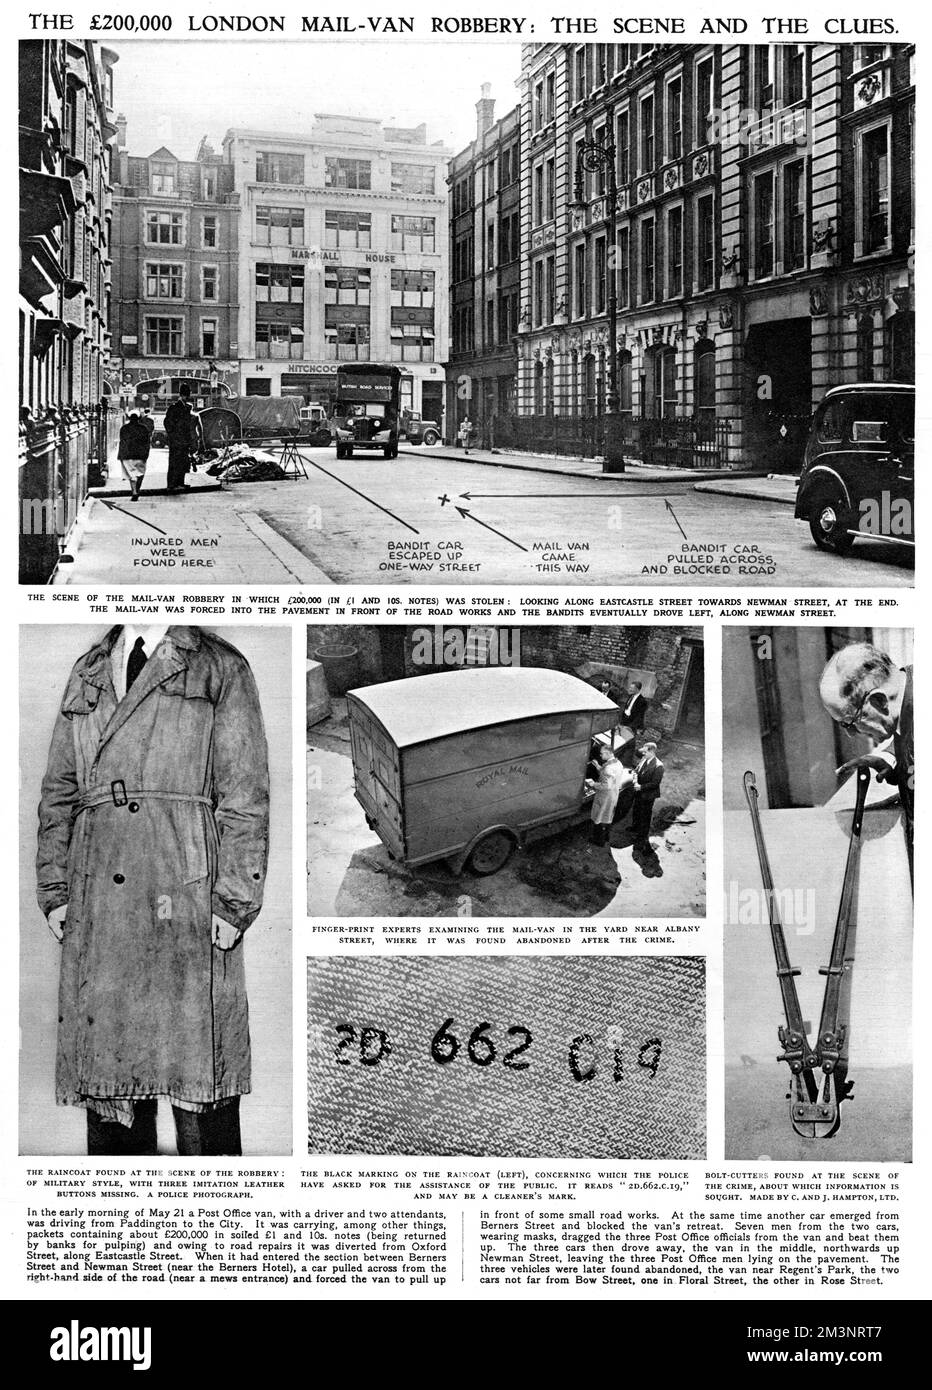 Eine Seite aus den illustrierten London News, die den Raubüberfall in der Eastcastle Street von 1952 beschreibt, als ein Postfilialbus entführt wurde und sein Inhalt, 200.000 in verschmutzten Scheinen, gestohlen wurde. Der Tatort, der gestohlene Postwagen, die Bolzenschneider und der Regenmantel, die am Tatort gefunden wurden, sind detailliert. Das Verbrechen wurde nie aufgeklärt, und das Geld wurde nie wiedergefunden. Datum: 1952 Stockfoto